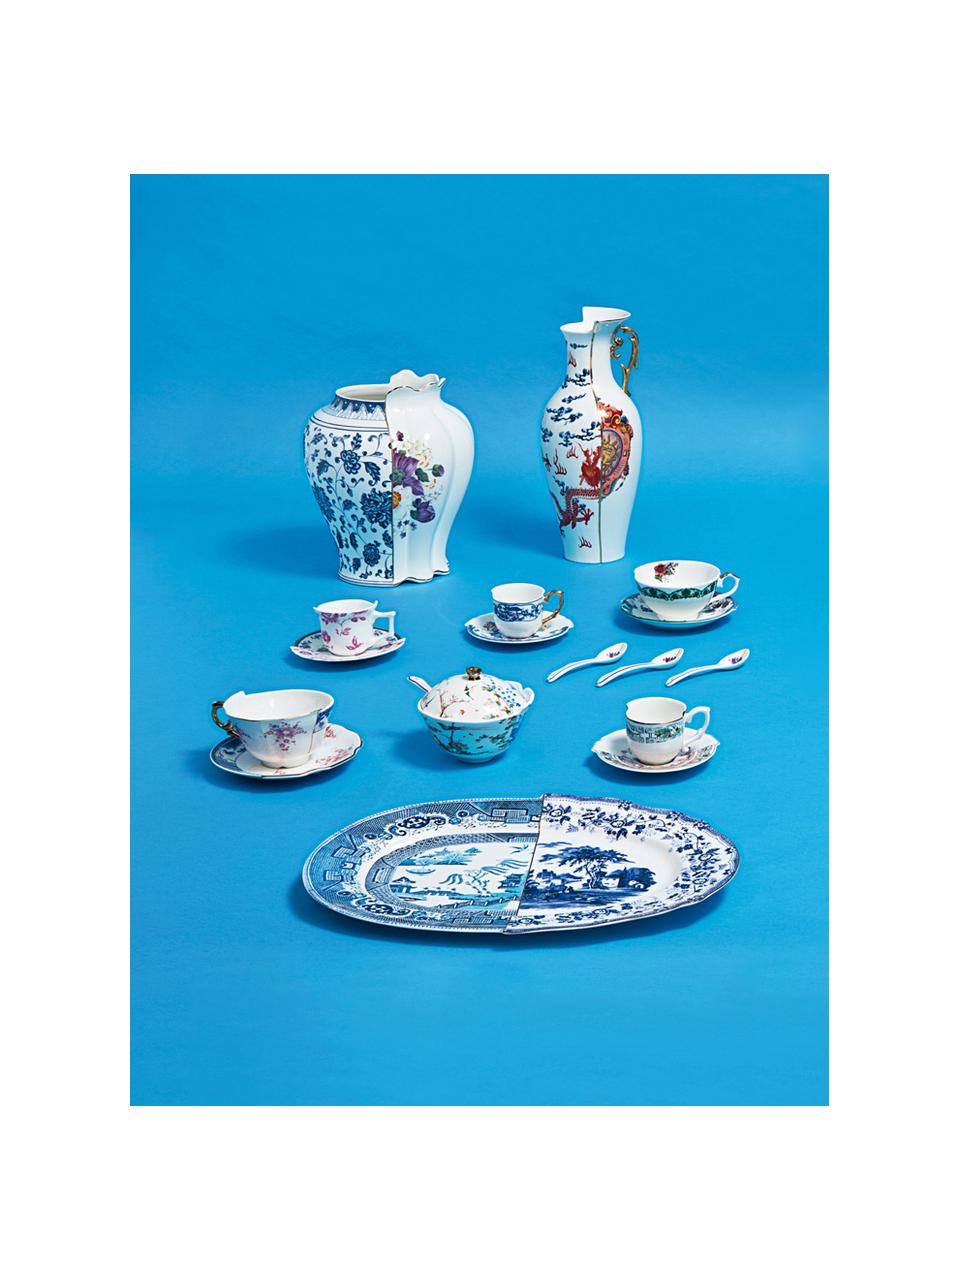 Ręcznie wykonana cukiernica Hybrid, Porcelana chińska, Niebieski, biały, złoty, Ø 12 x 9 cm